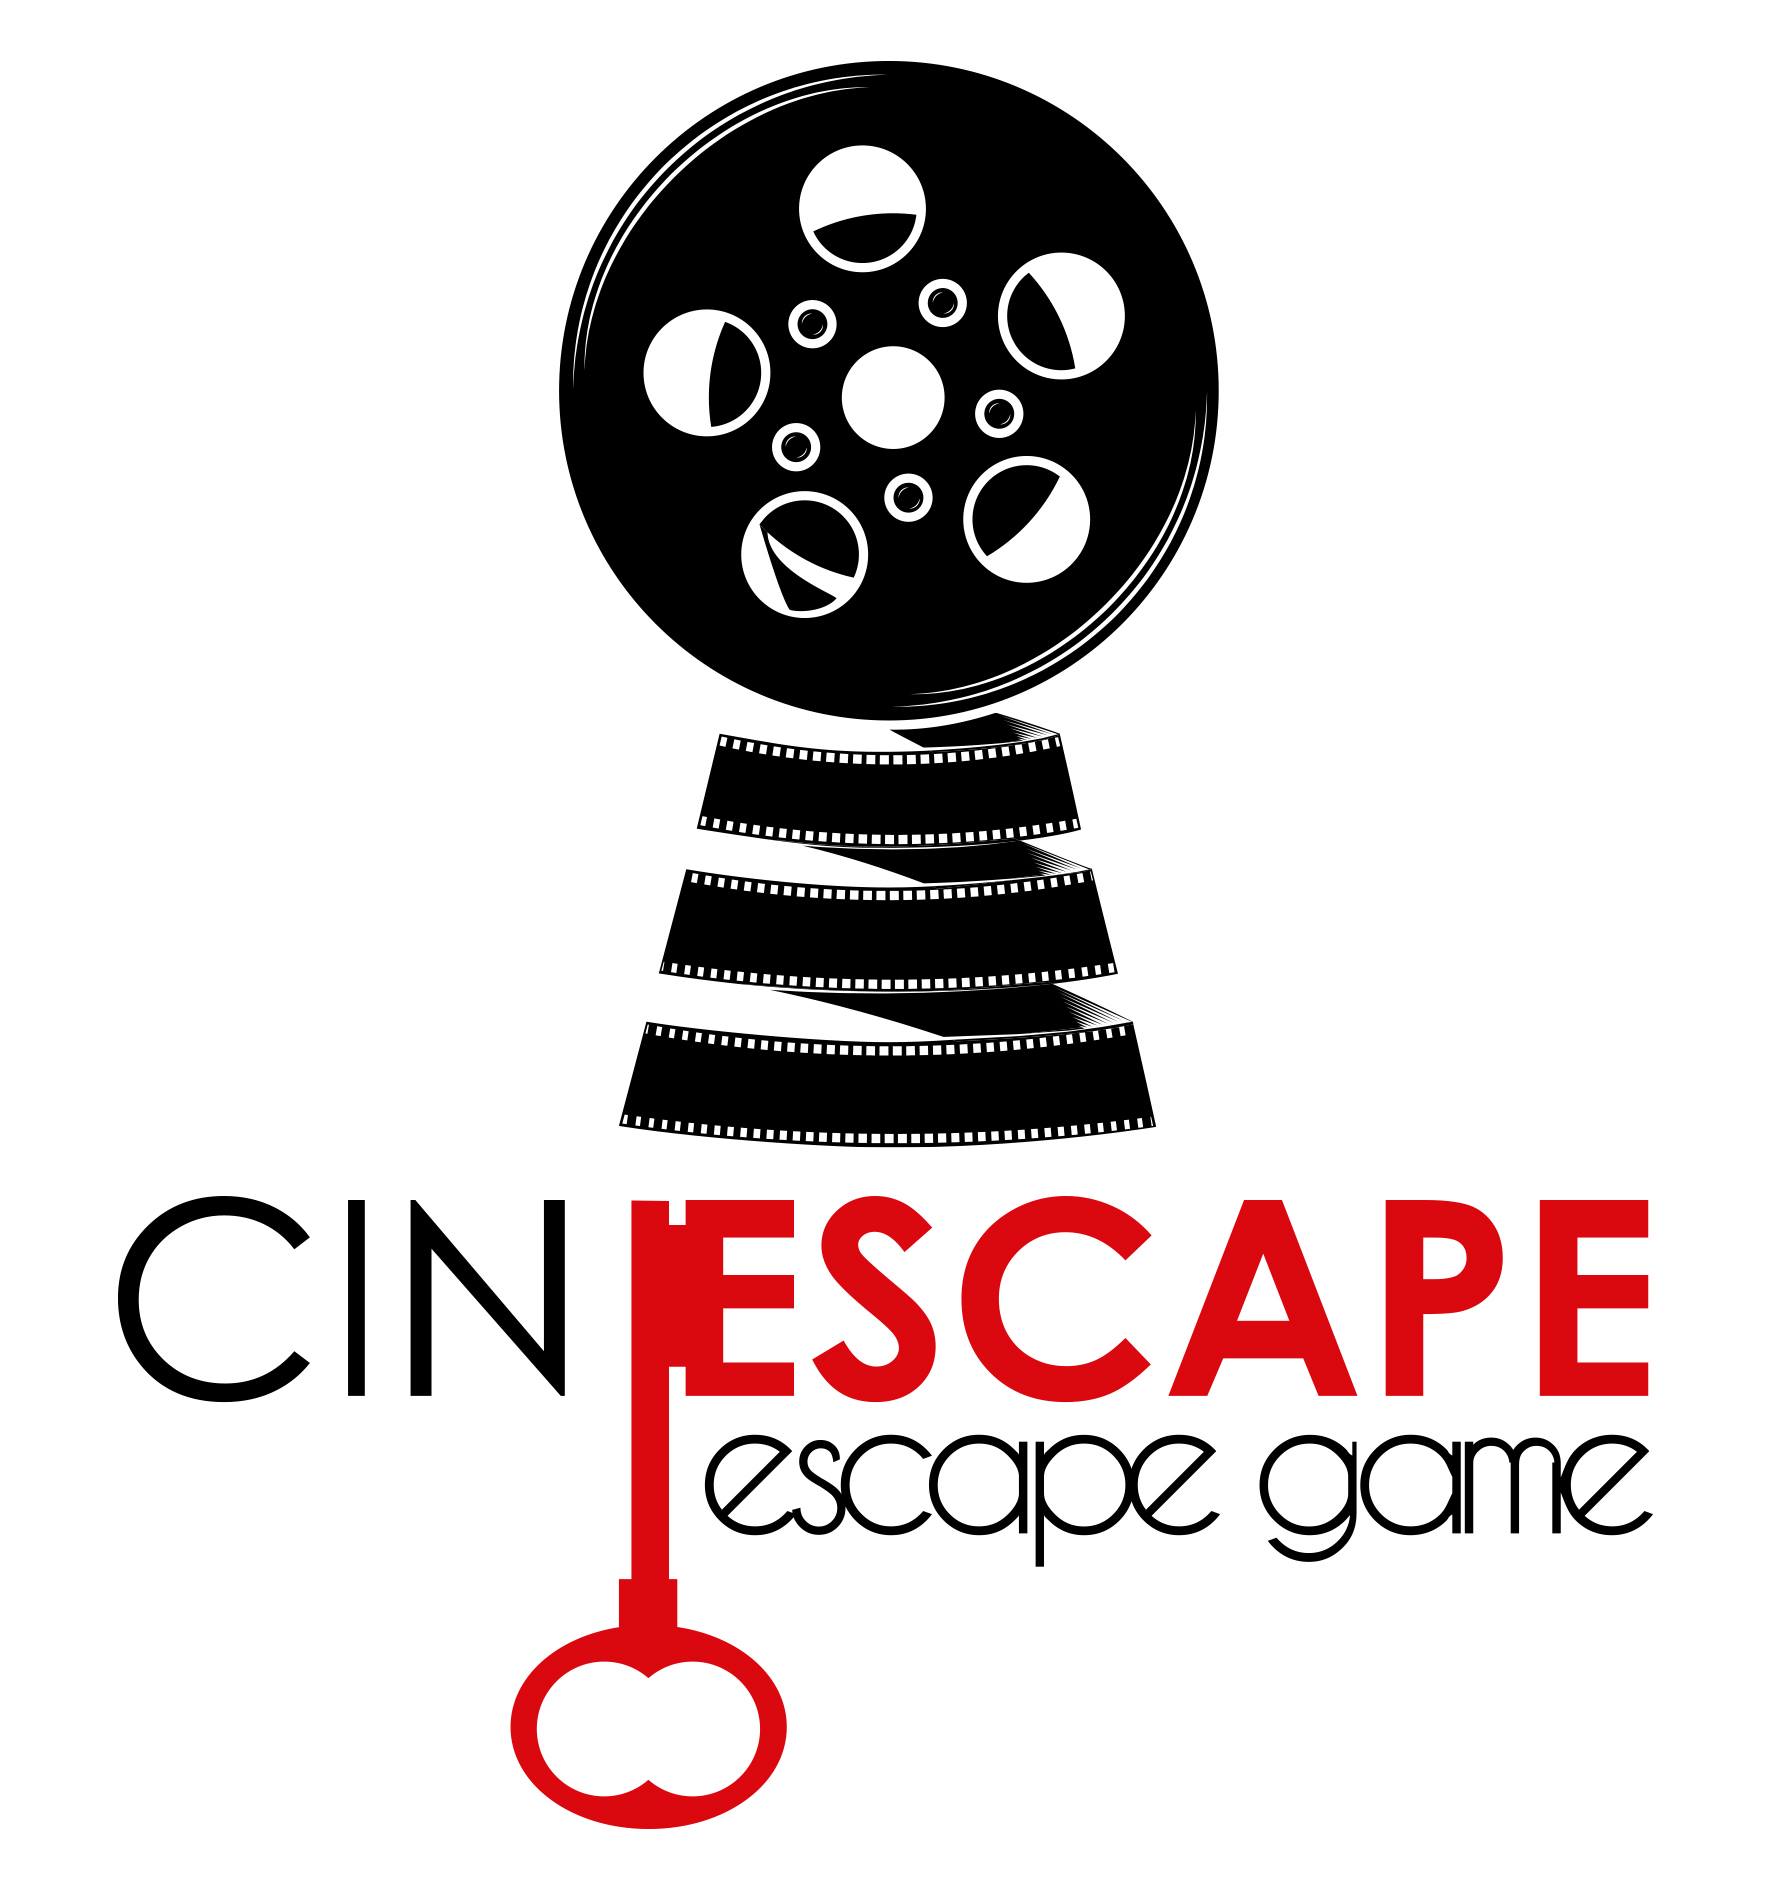 Cinescape Escape Game